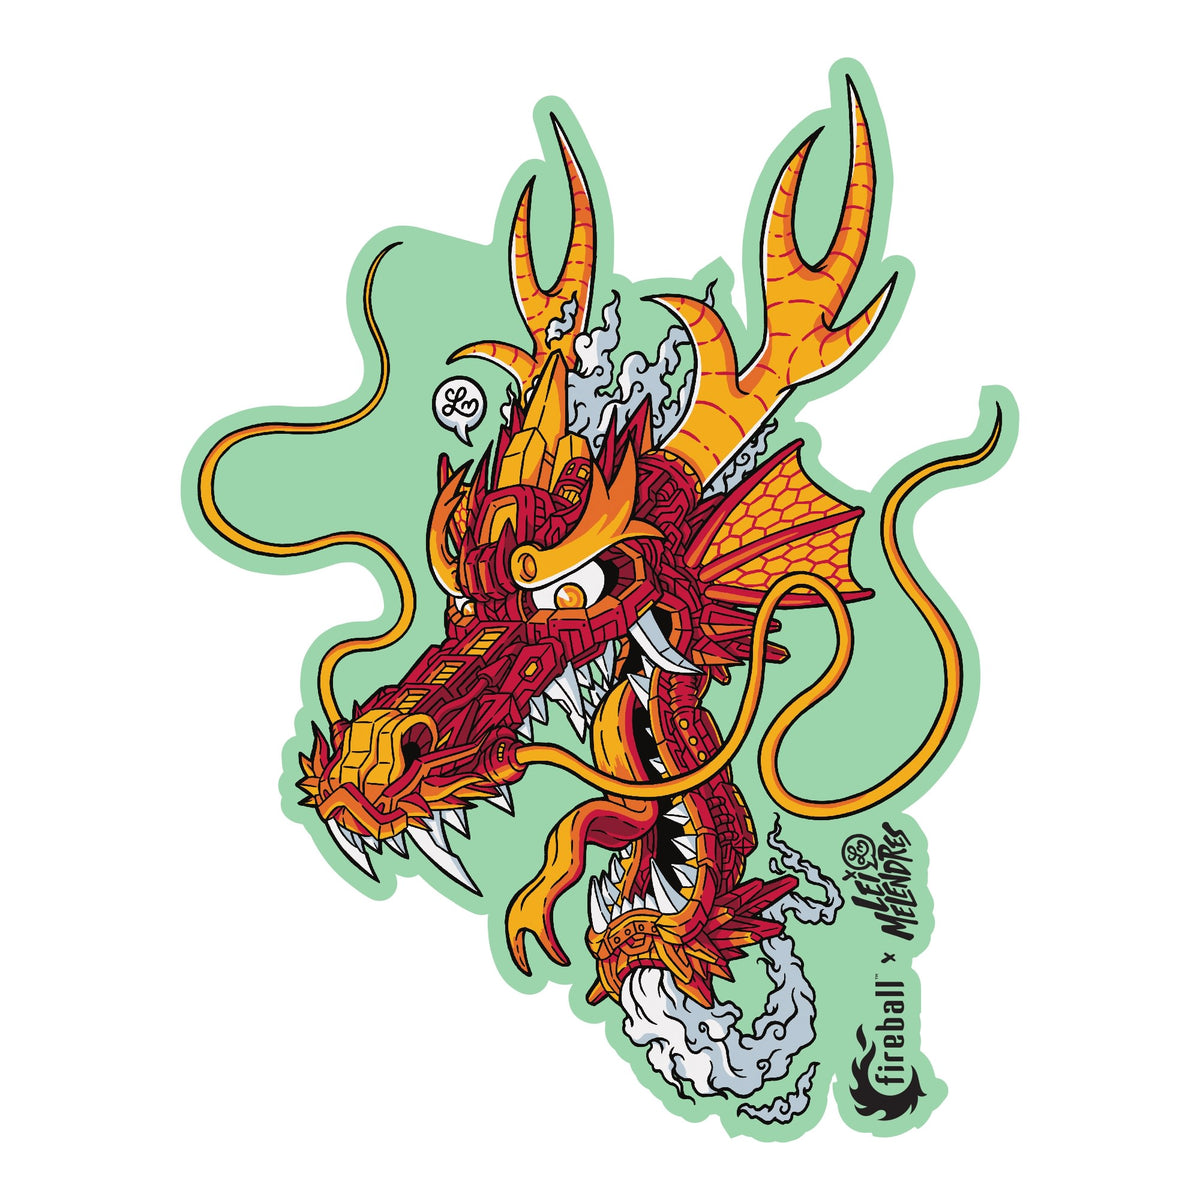 Fireball x Lei Melendres "Mech Dragon" Sticker